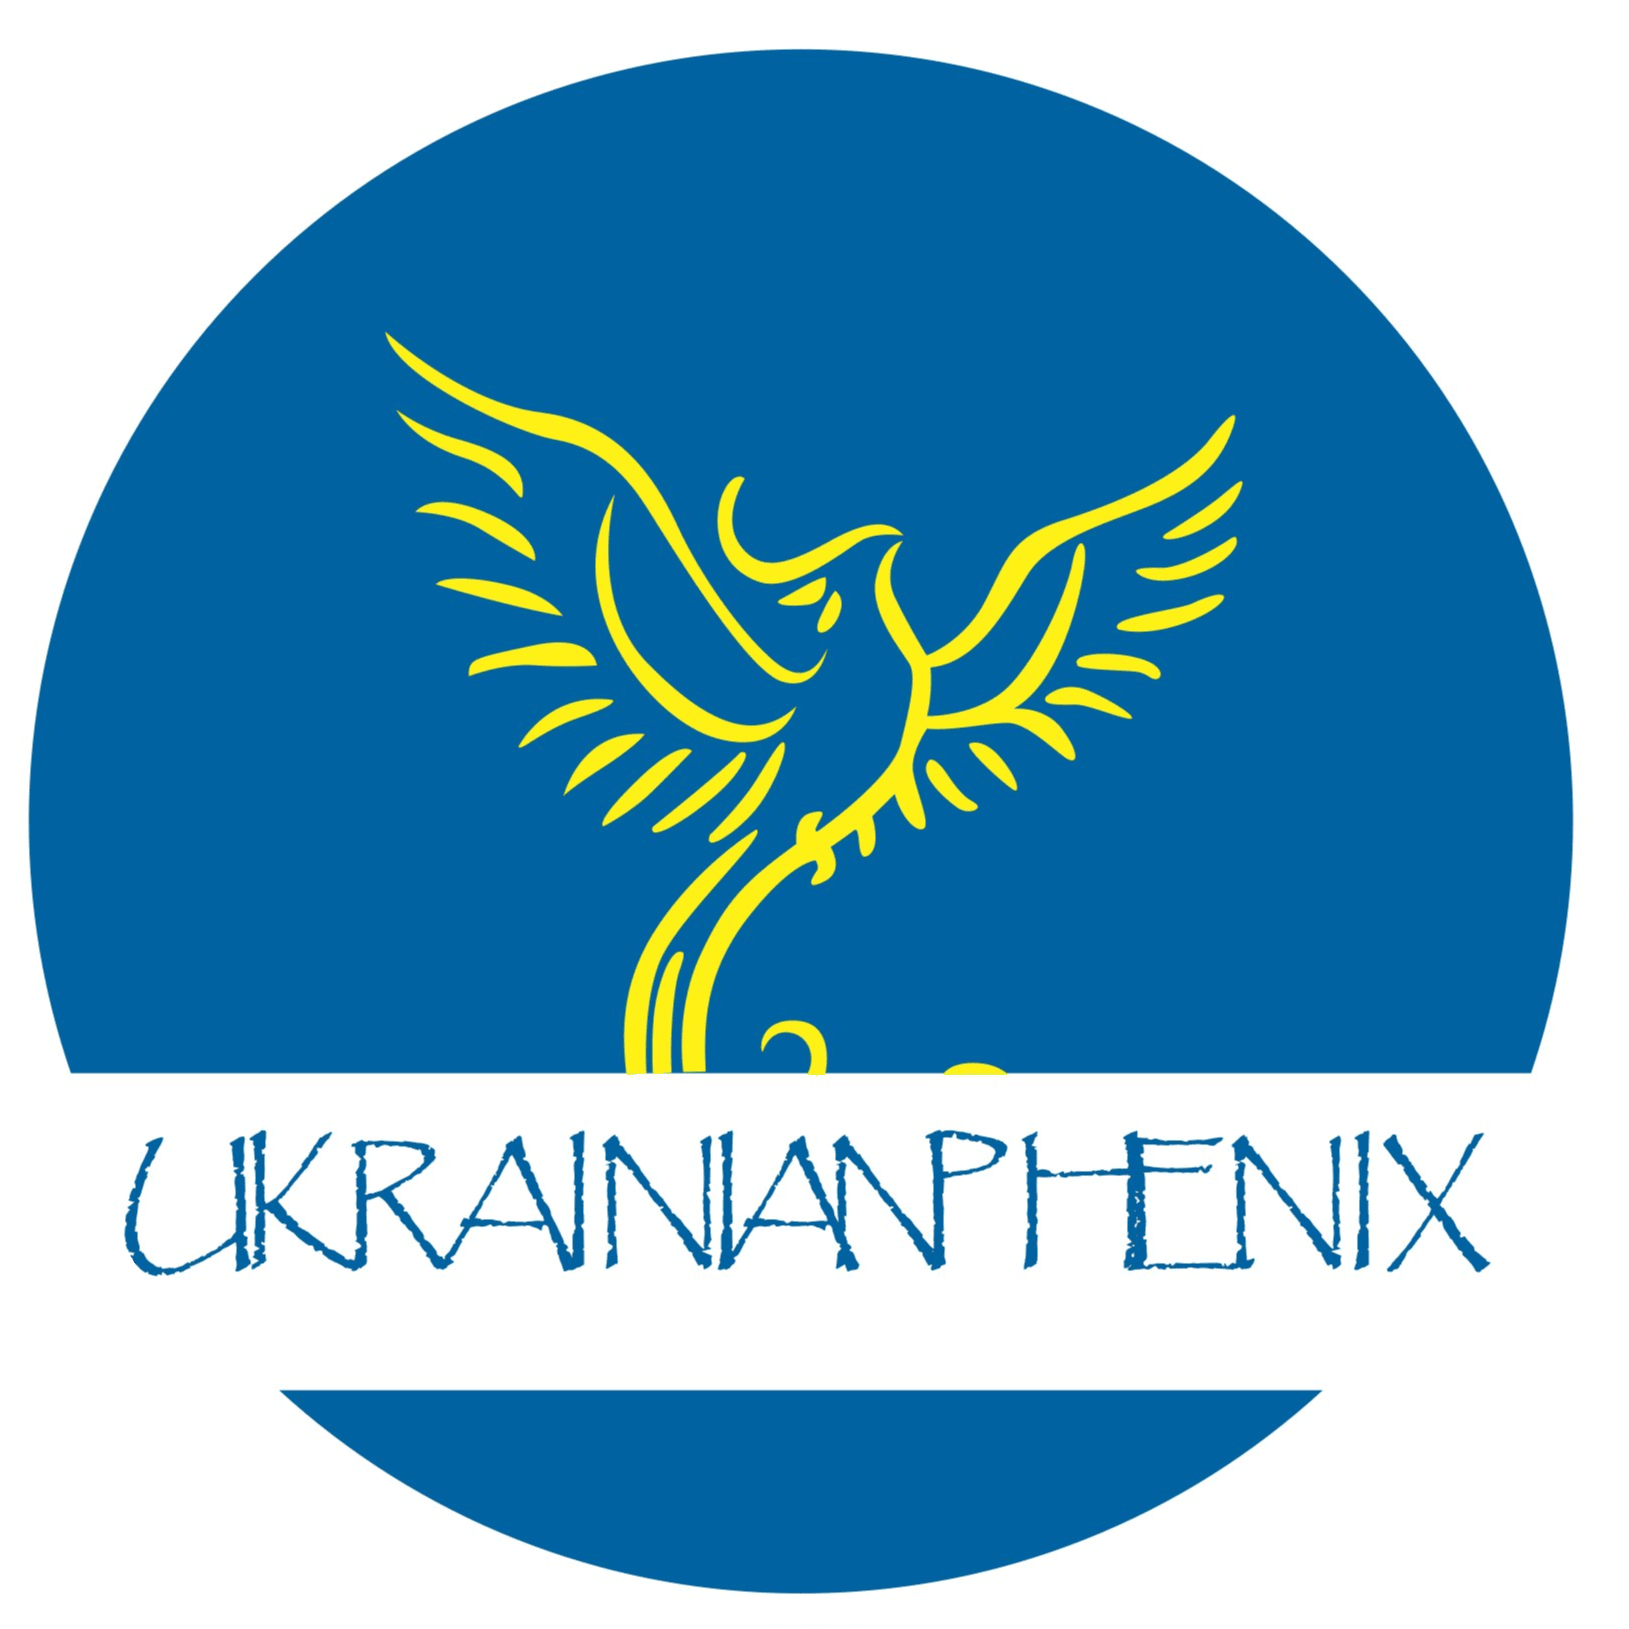 ukrainian phenix logo